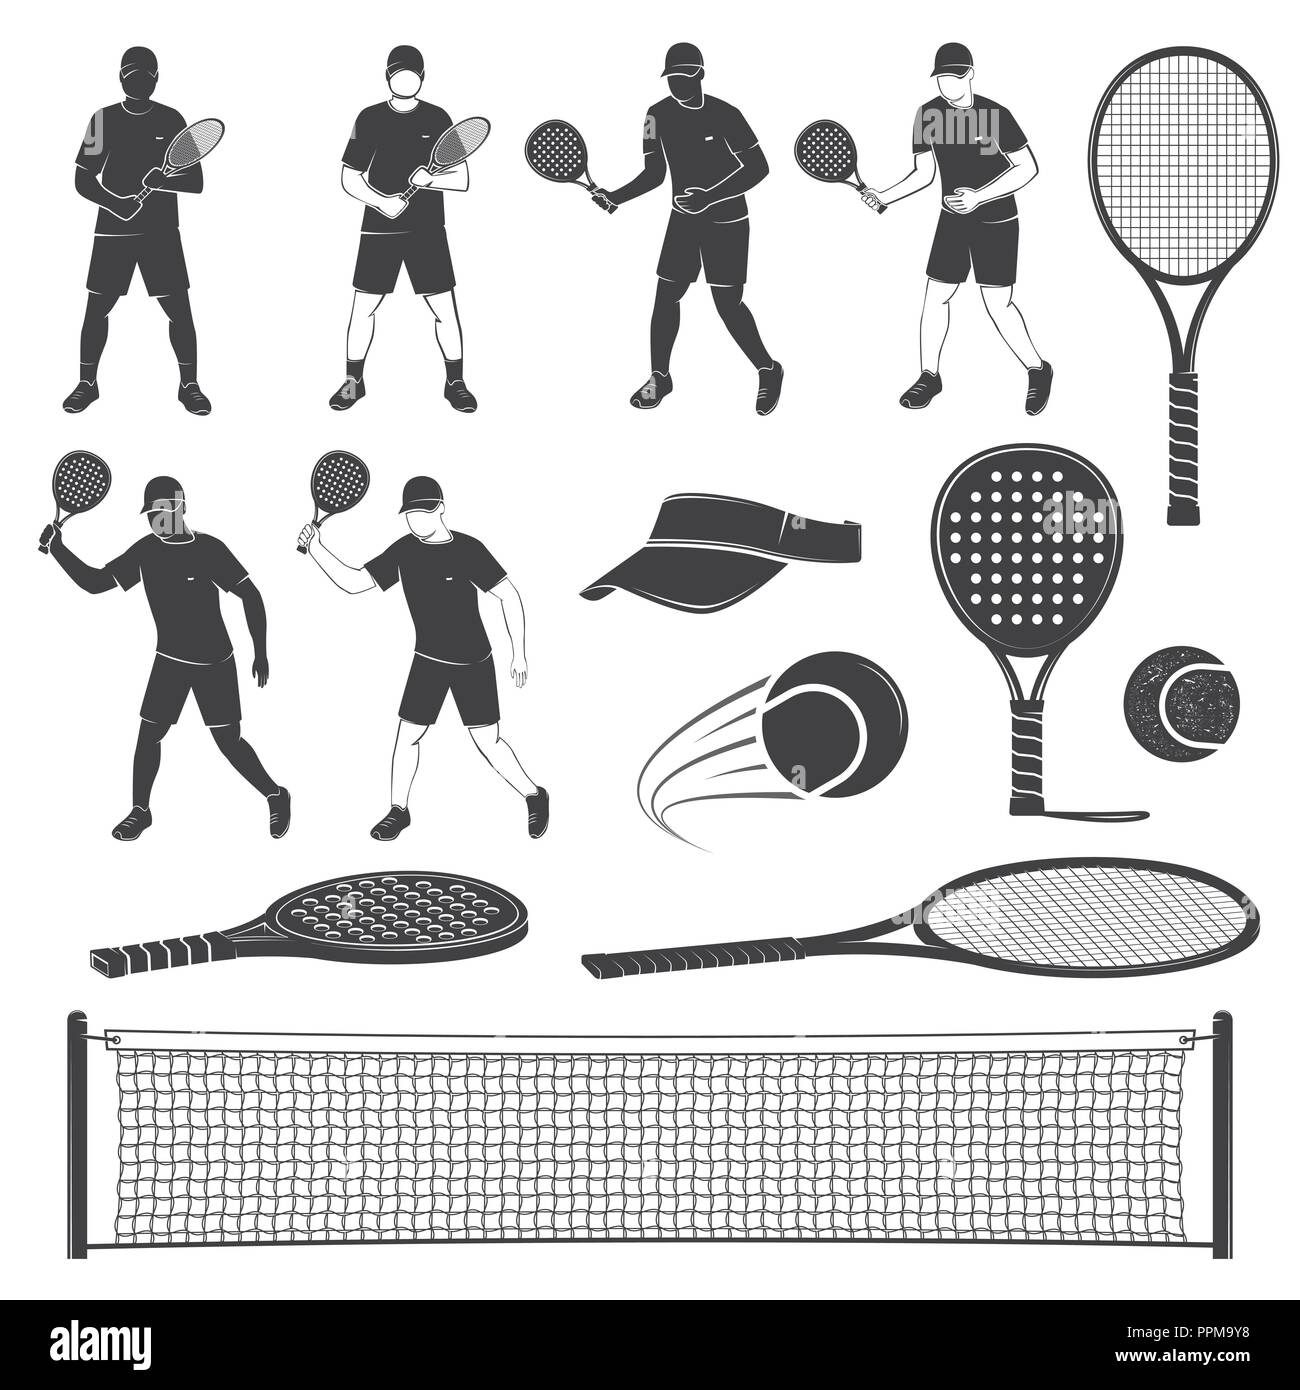 Paddle tennis Banque d'images détourées - Alamy